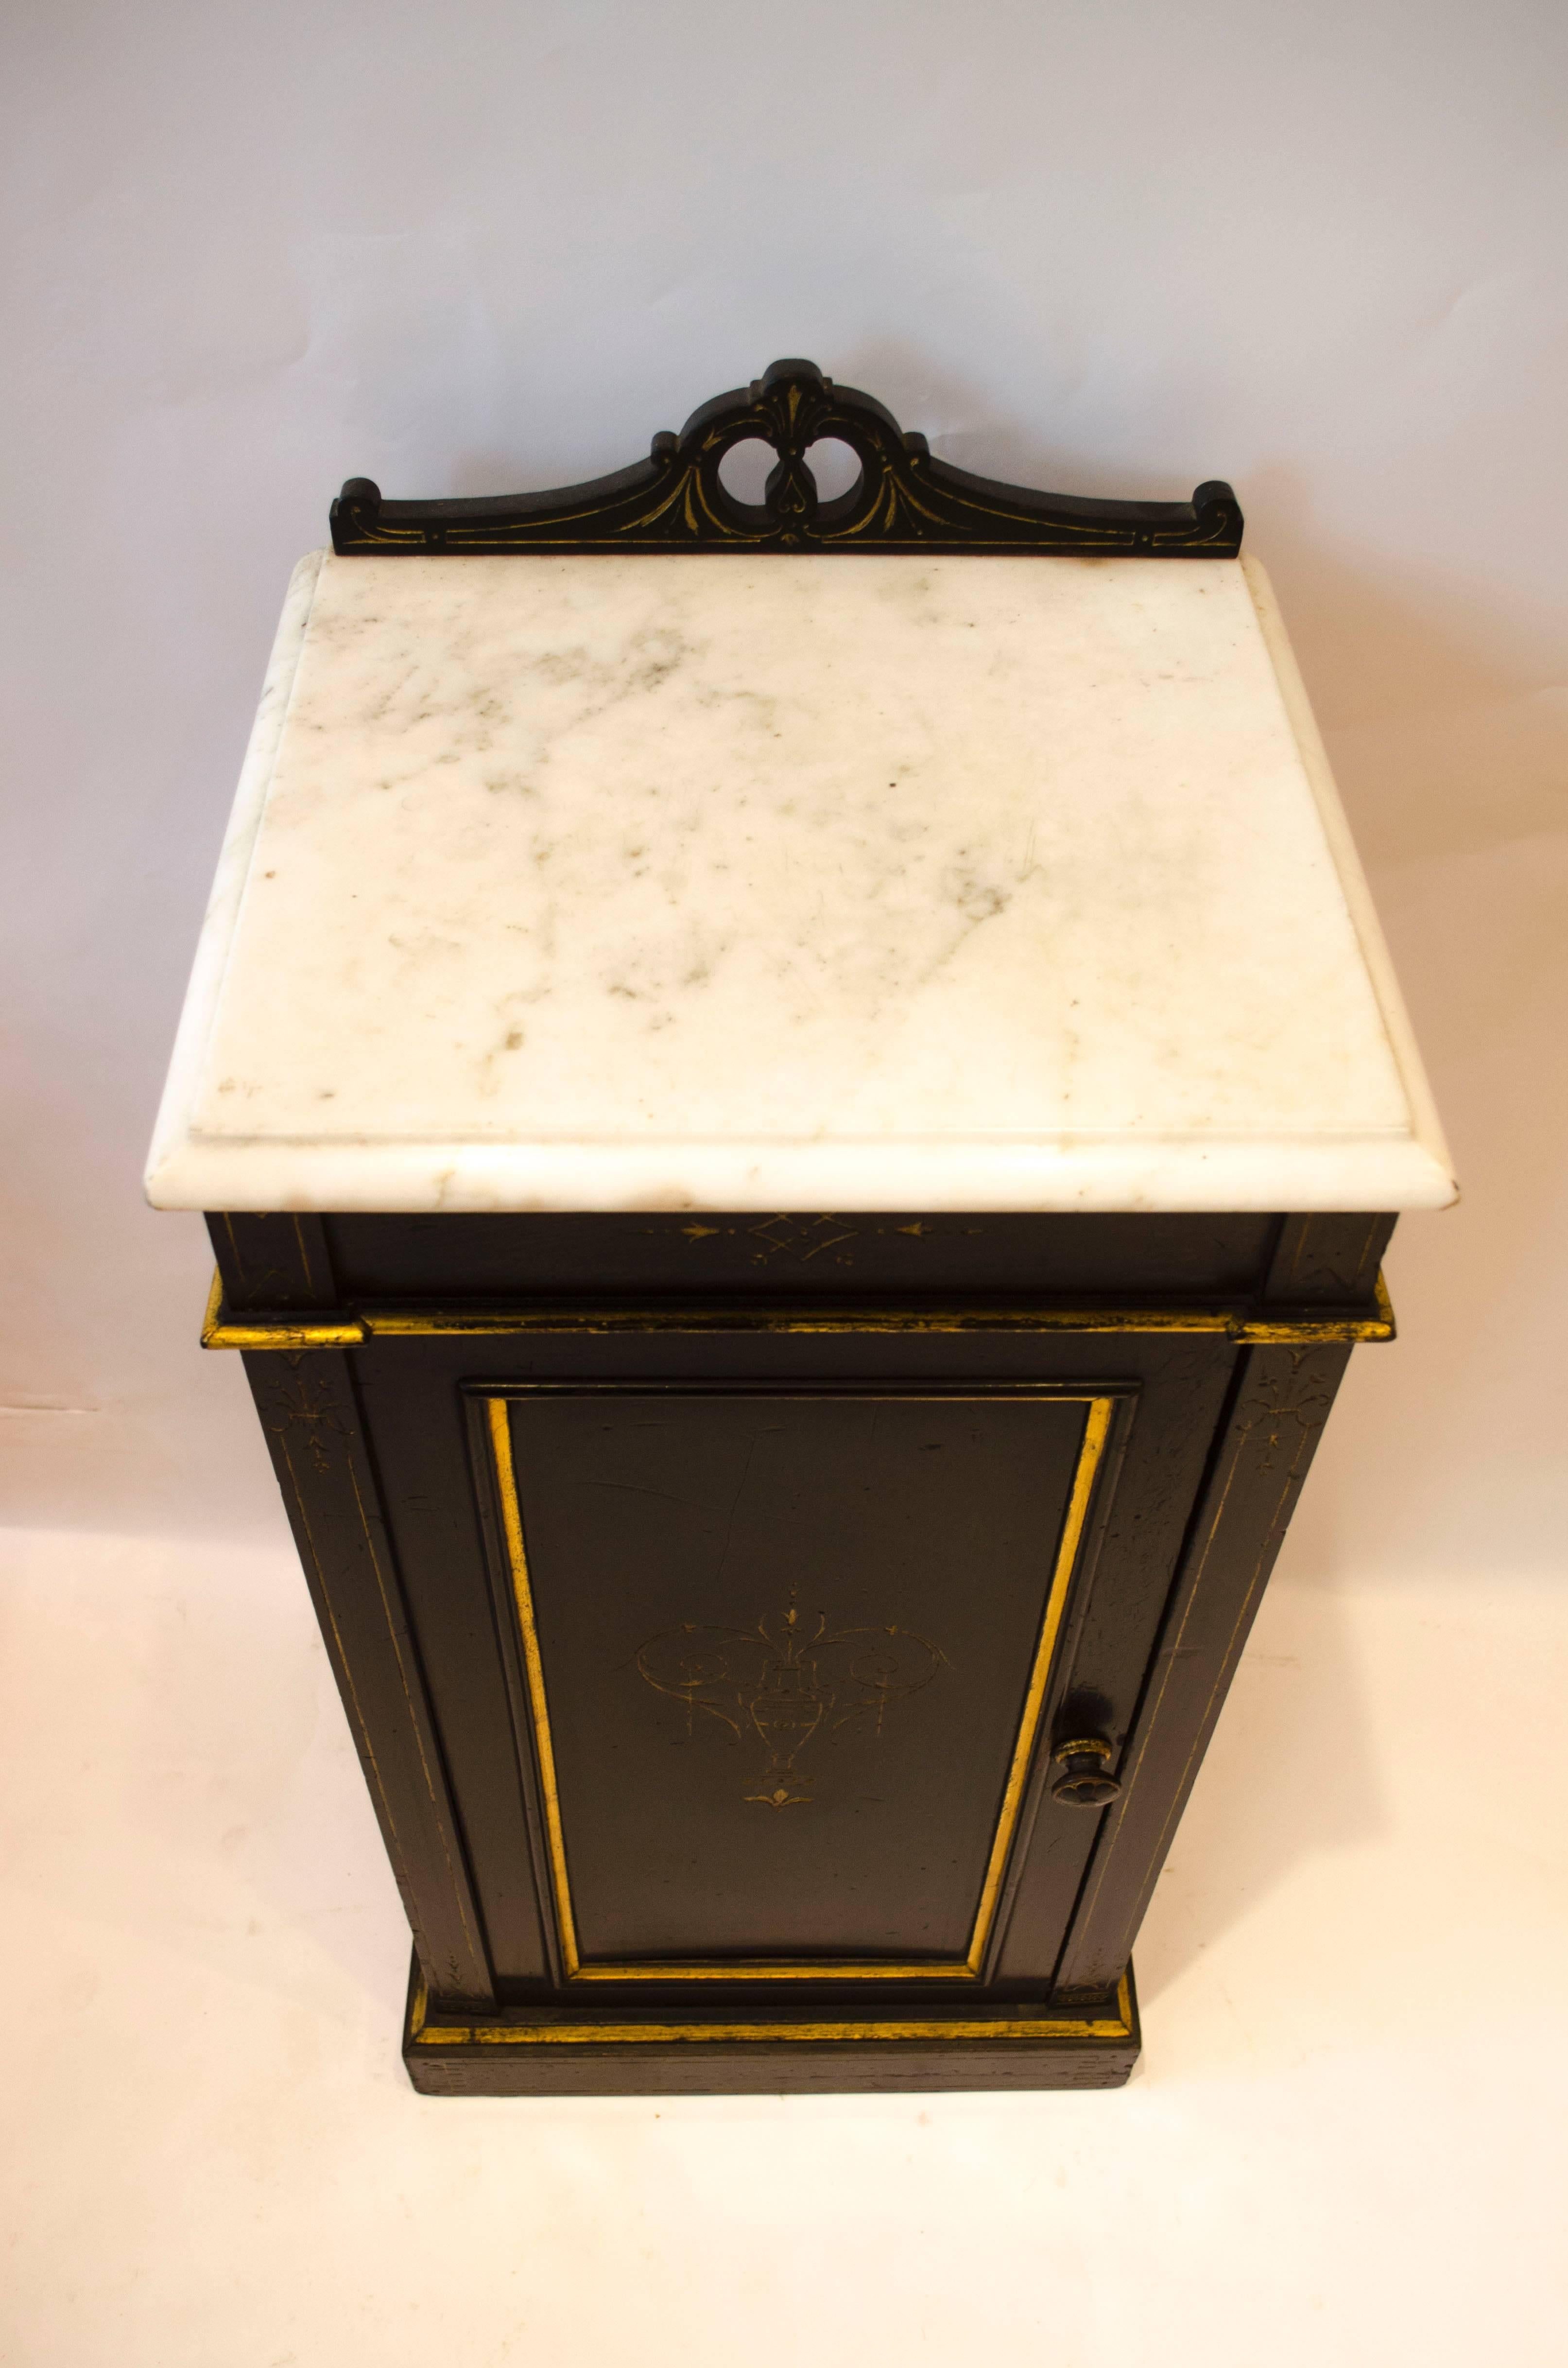 Rare table de chevet ébonisée et dorée de Heal and Son Aesthetic Movement, avec dessus en marbre et décor doré incisé. Le cachet de Heal's et Son London est apposé sur le haut de la porte.
Heal's a commencé à fabriquer des meubles en 1801.
 